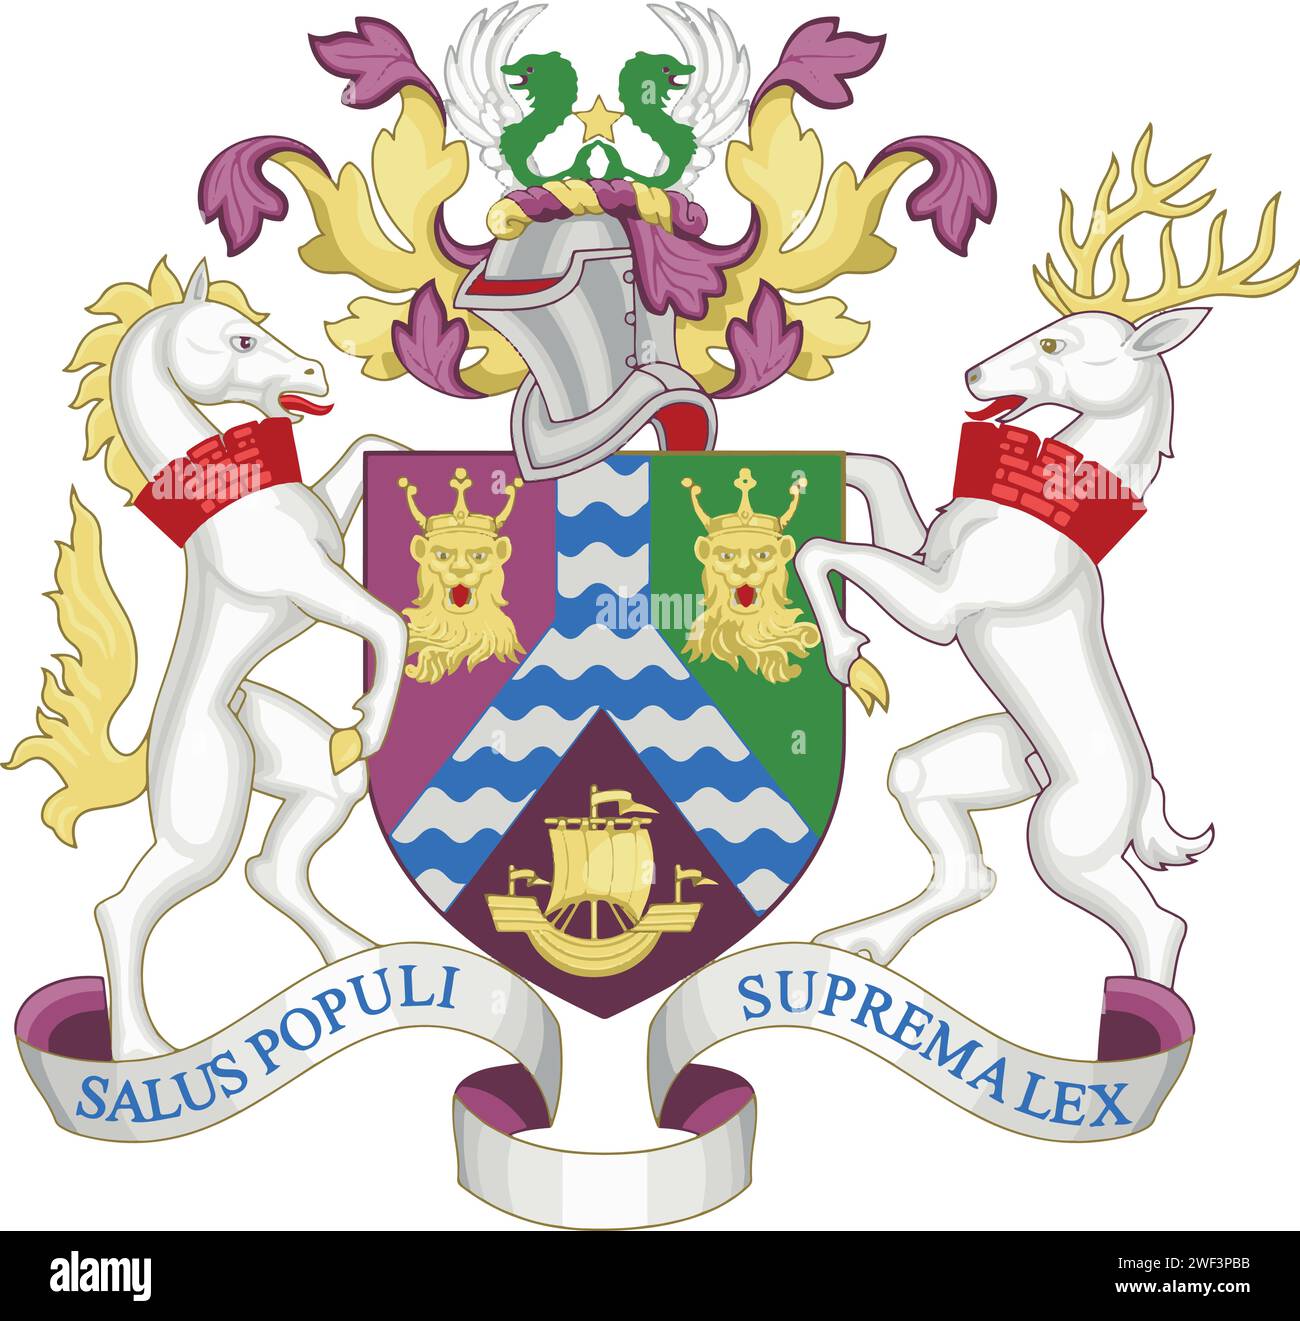 Offizielle Wappenvektorgrafik des englischen Verwaltungsbezirks des BOROUGH OF LEWISHAM, LONDON Stock Vektor